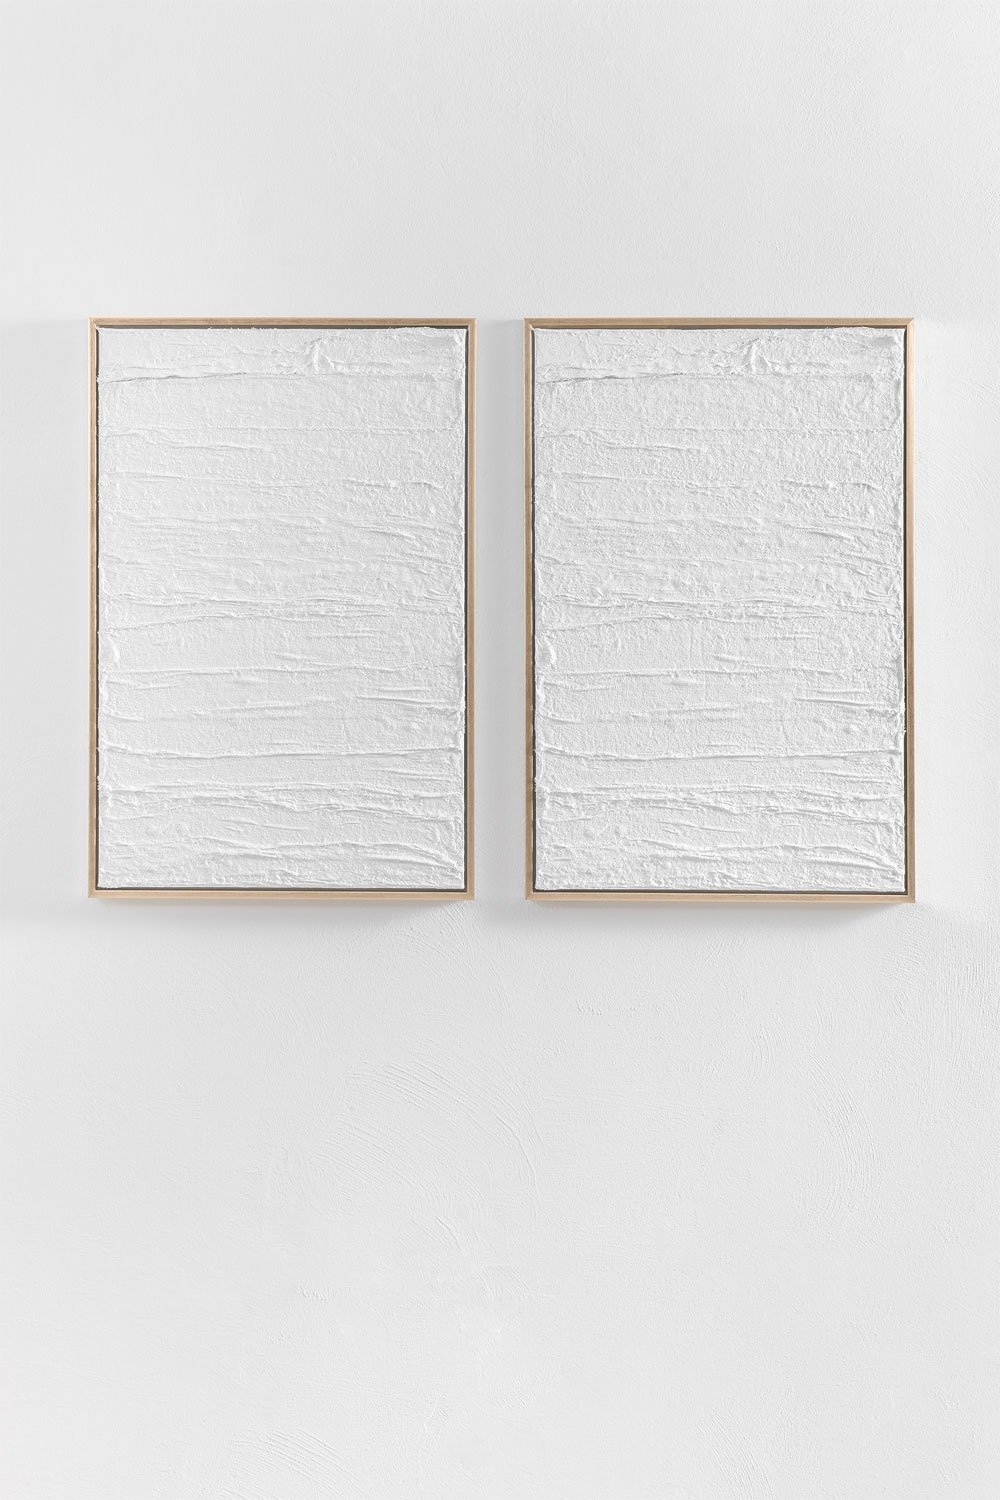 Conjunto de 2 Quadros Decorativos em Gesso Relevo (60x90 cm) Leclerc, imagem de galeria 1